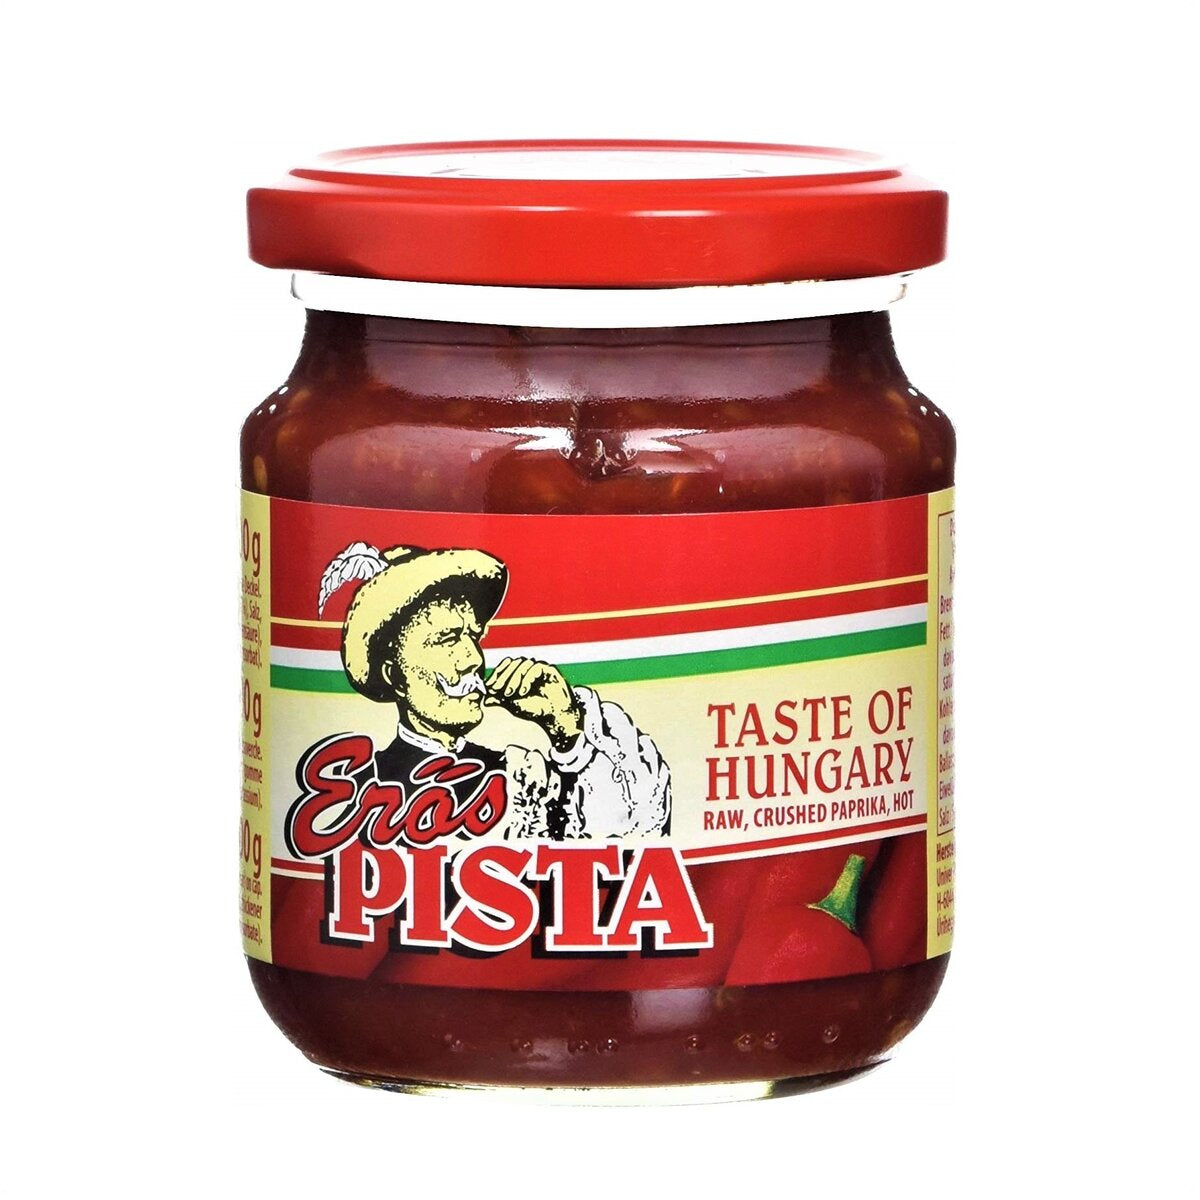 Erős Pista 200g - Hungarian Hot Red Pepper Sauce – Best of Hungary